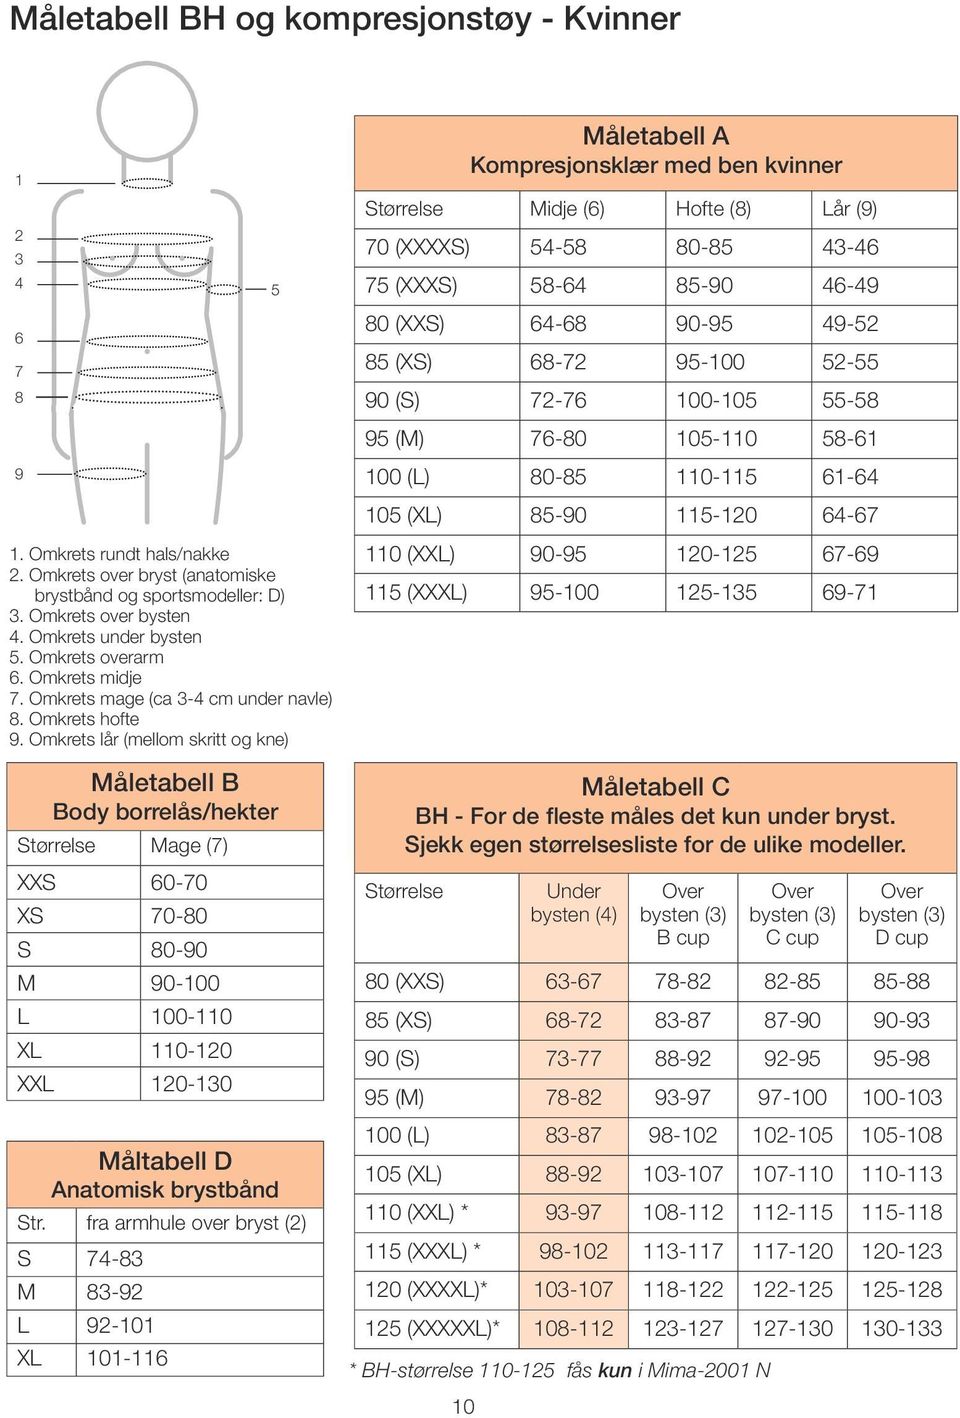 Omkrets lår (mellom skritt og kne) Måletabell B Body borrelås/hekter Størrelse Mage (7) XXS 60-70 XS 70-80 S 80-90 M 90-100 L 100-110 XL 110-120 XXL 120-130 Måltabell D Anatomisk brystbånd Str.